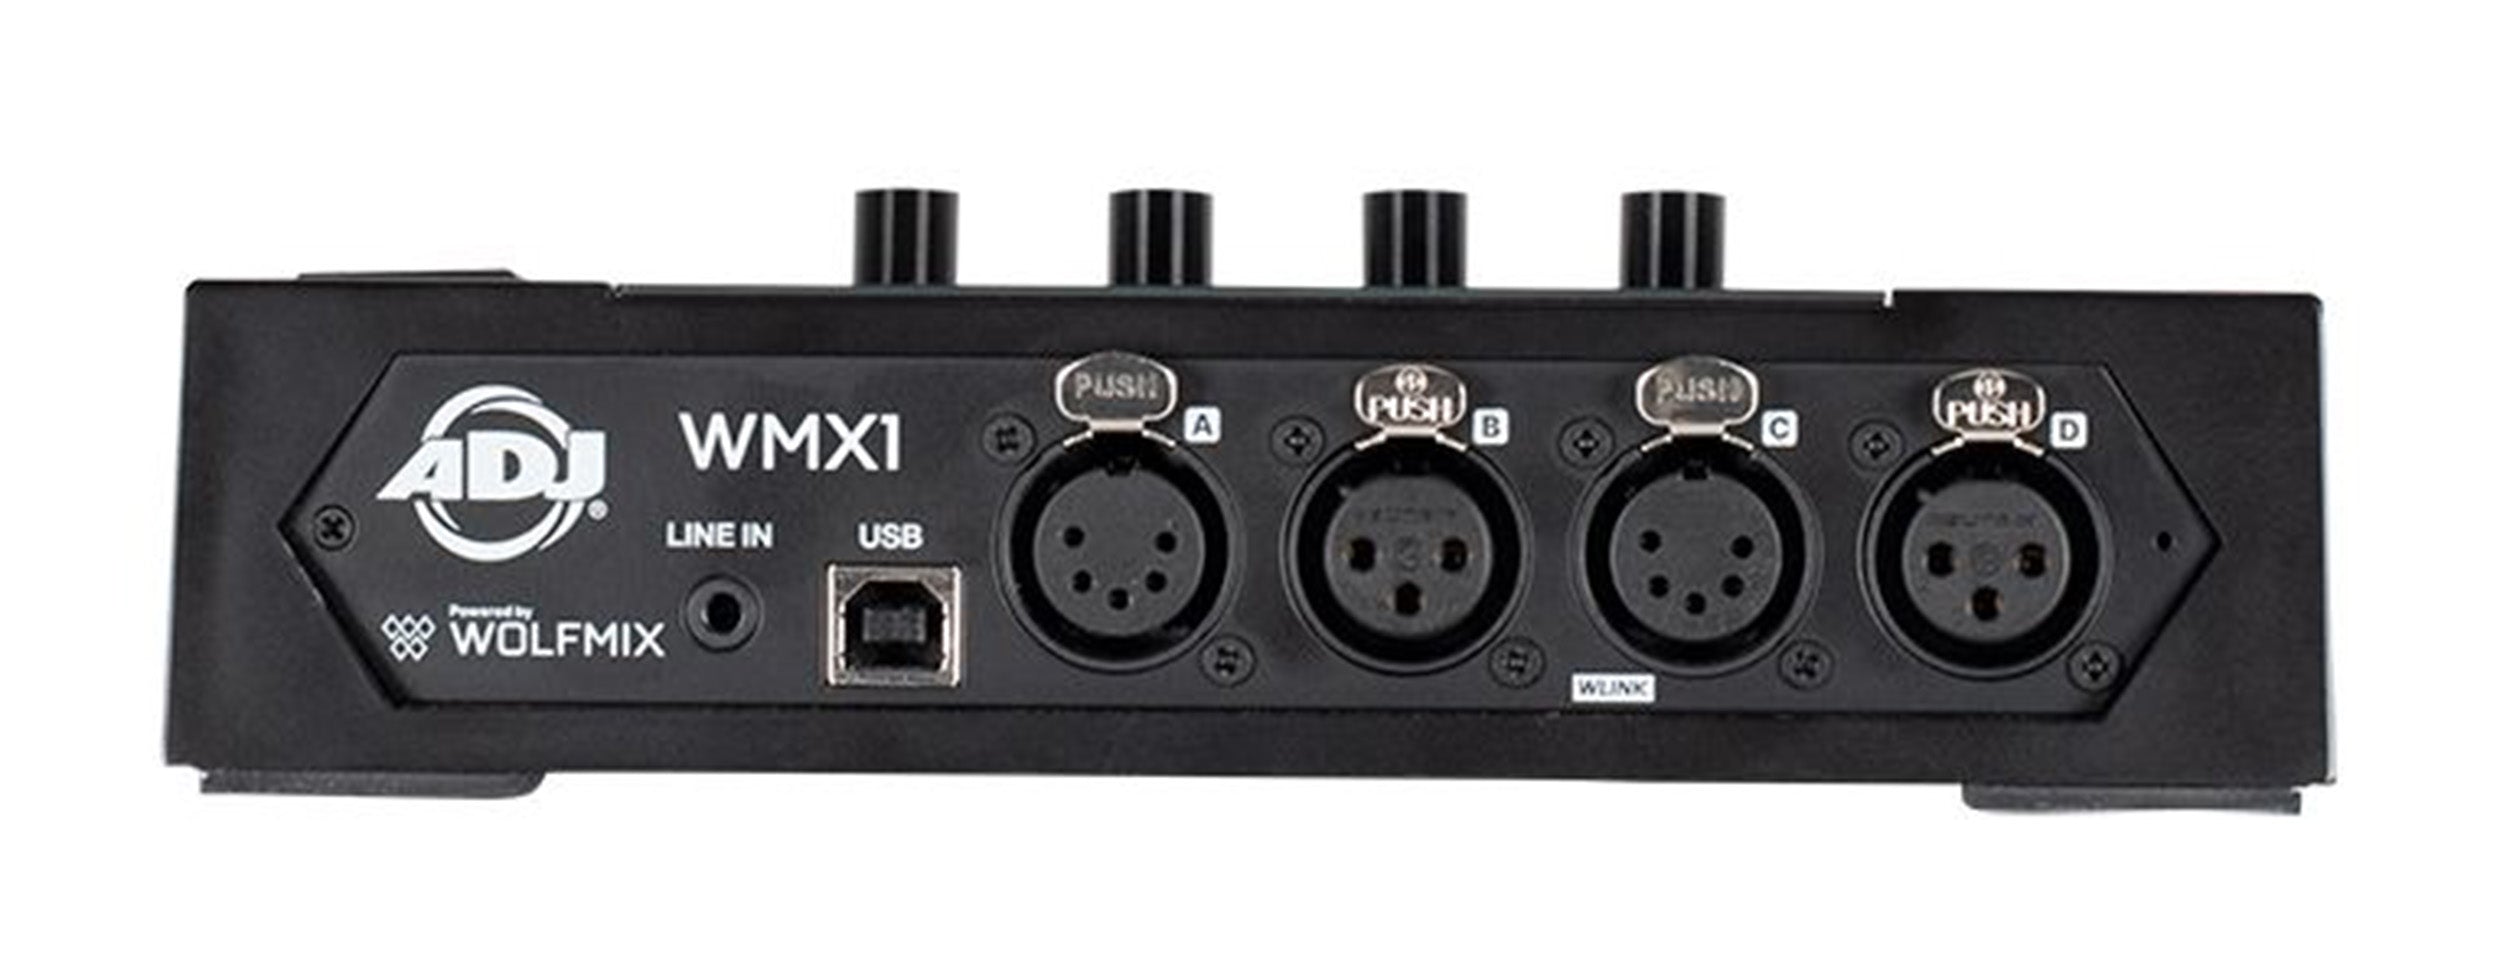 ADJ WMX1, Standalone DMX Lighting Control System by ADJ